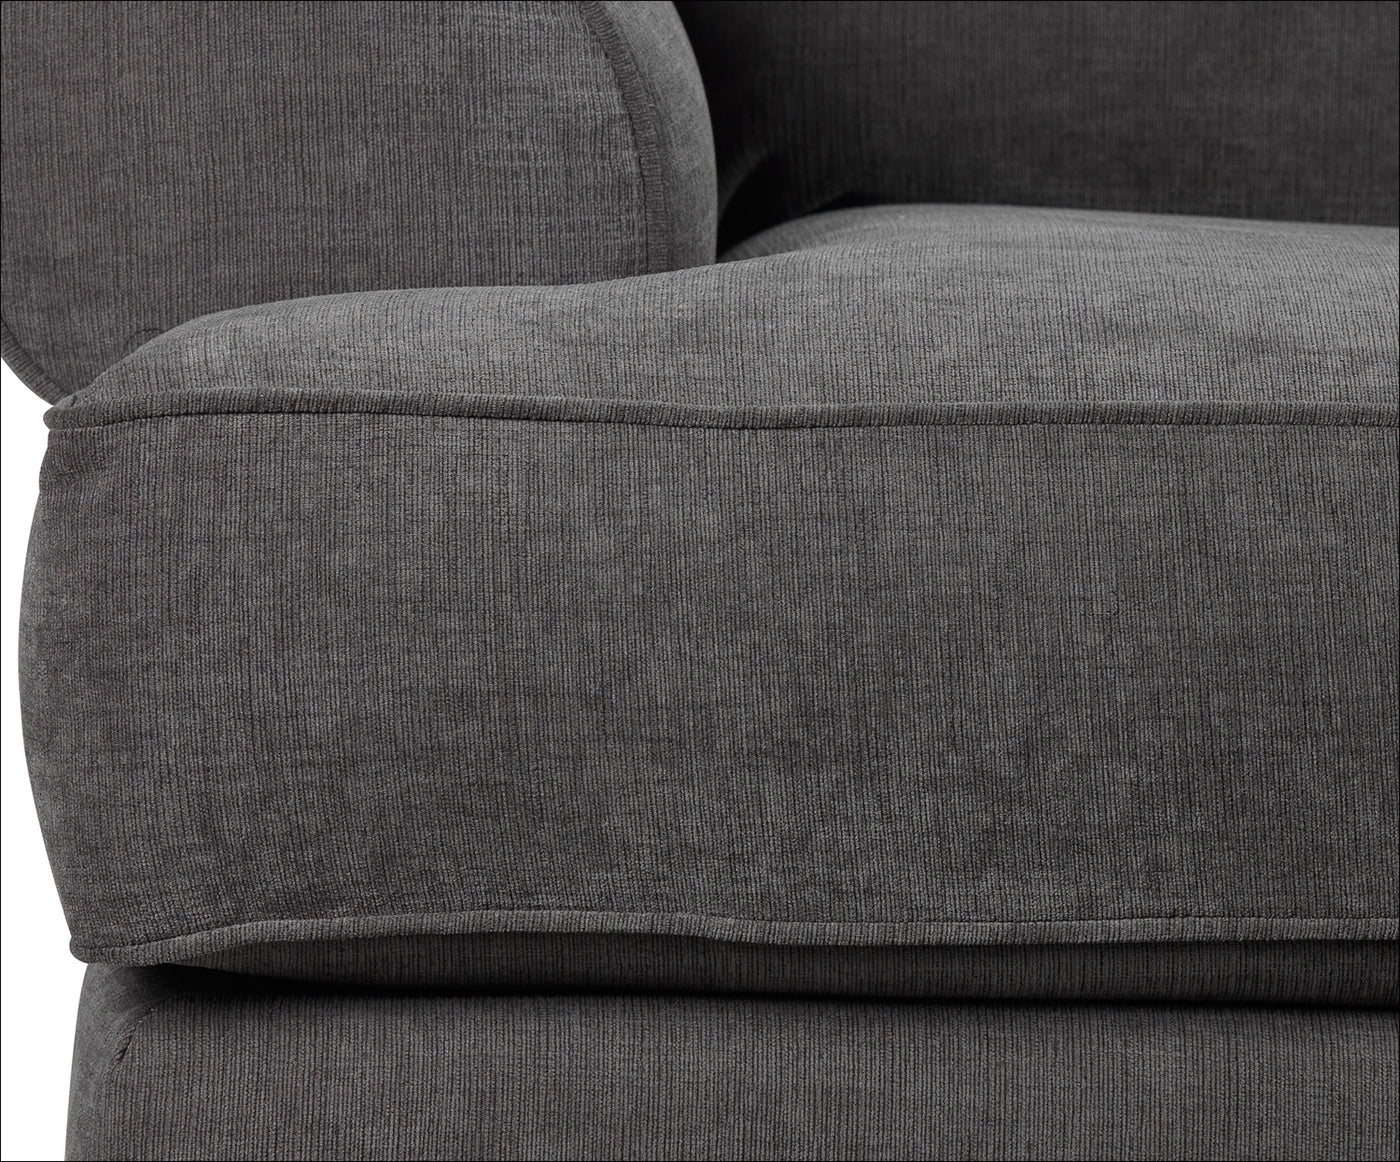 Crizia Full Sofa Bed - Dark Grey